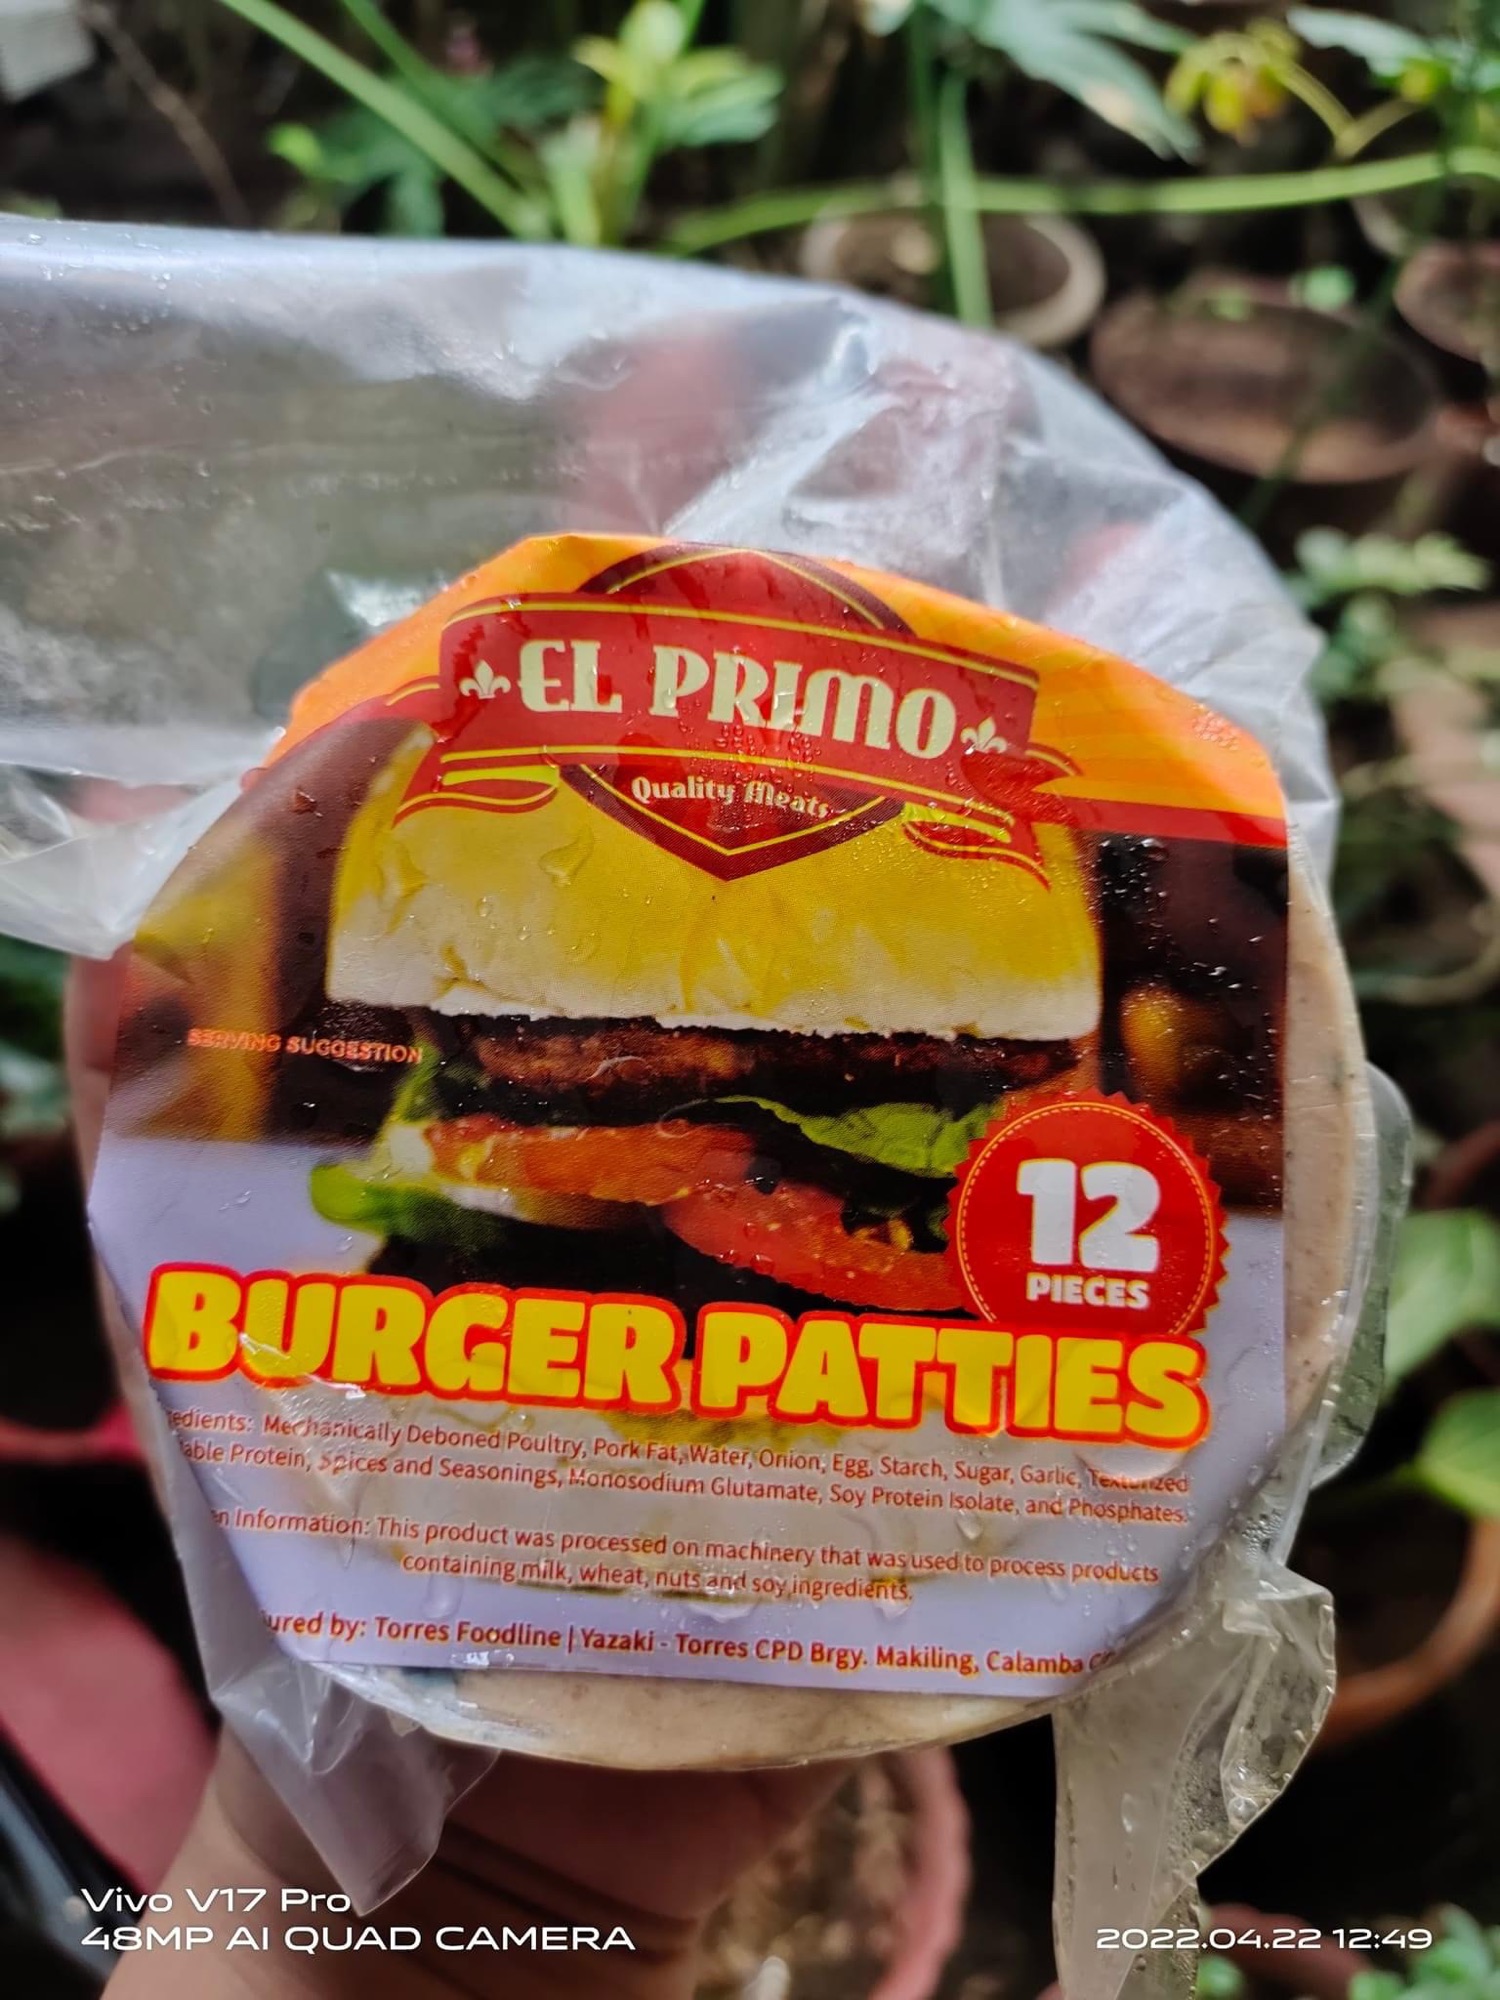 El Primo Burger Patties 12 pcs